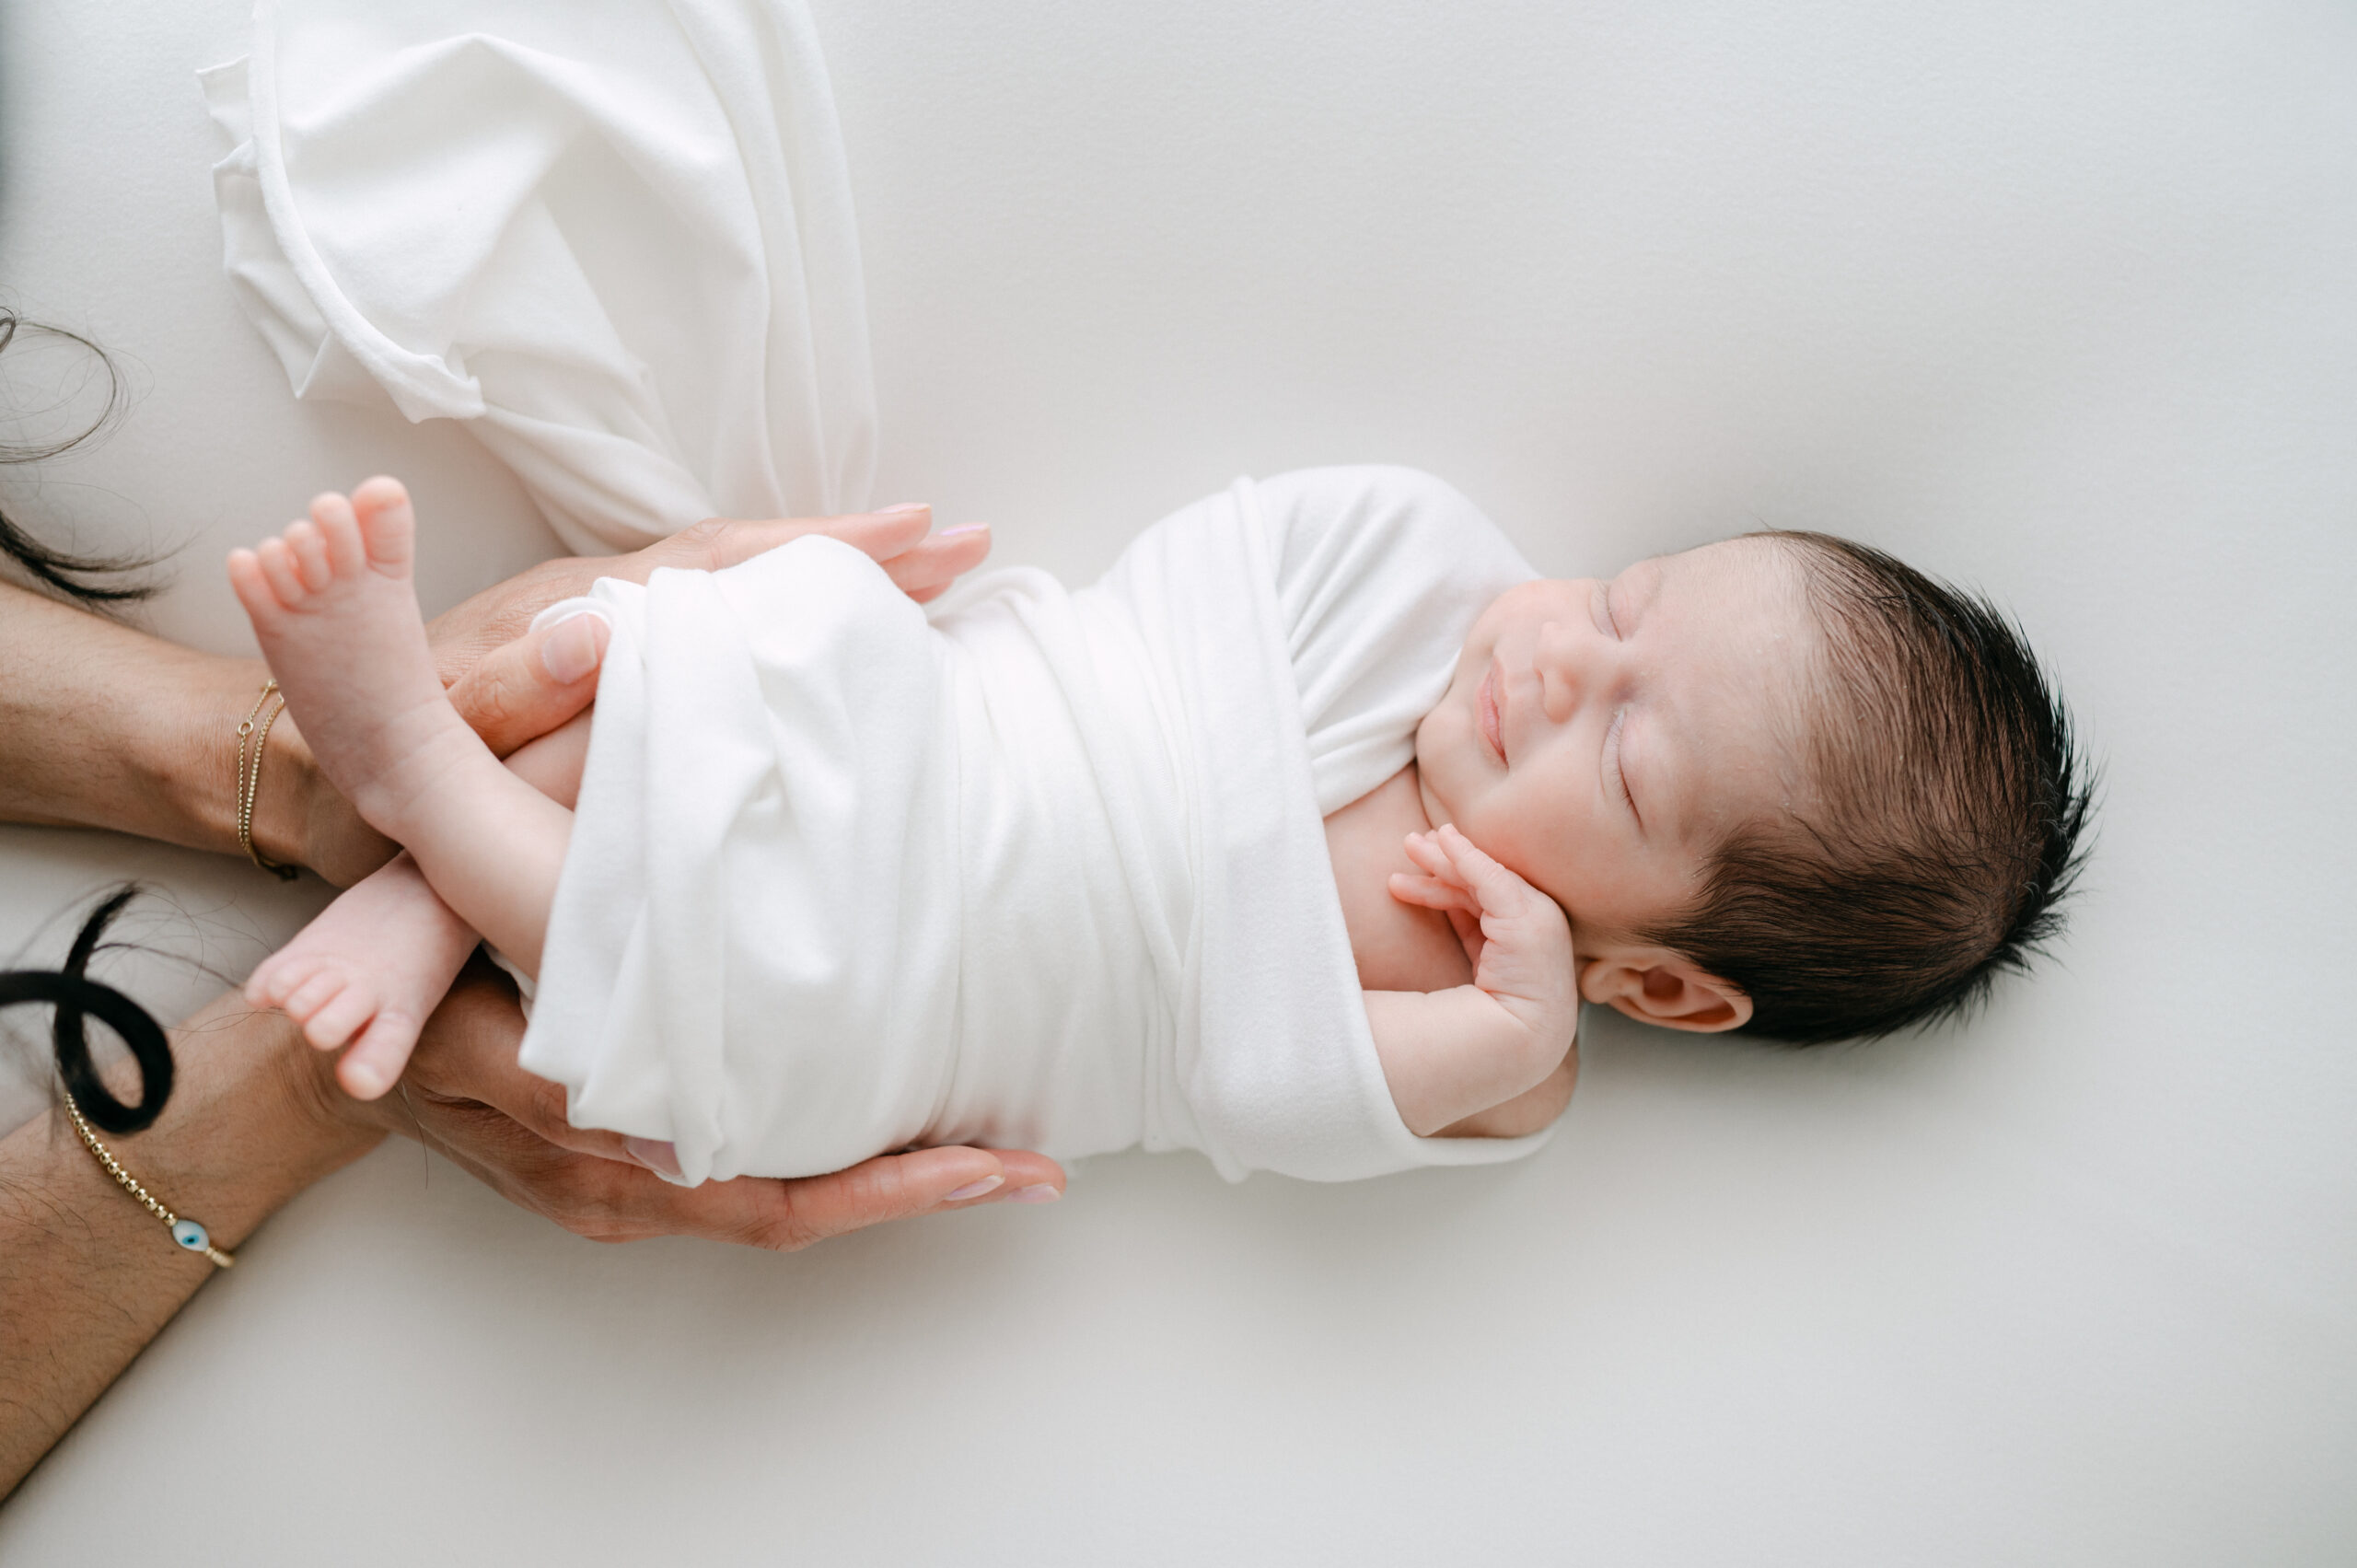 Smiling newborn baby during photoshoot